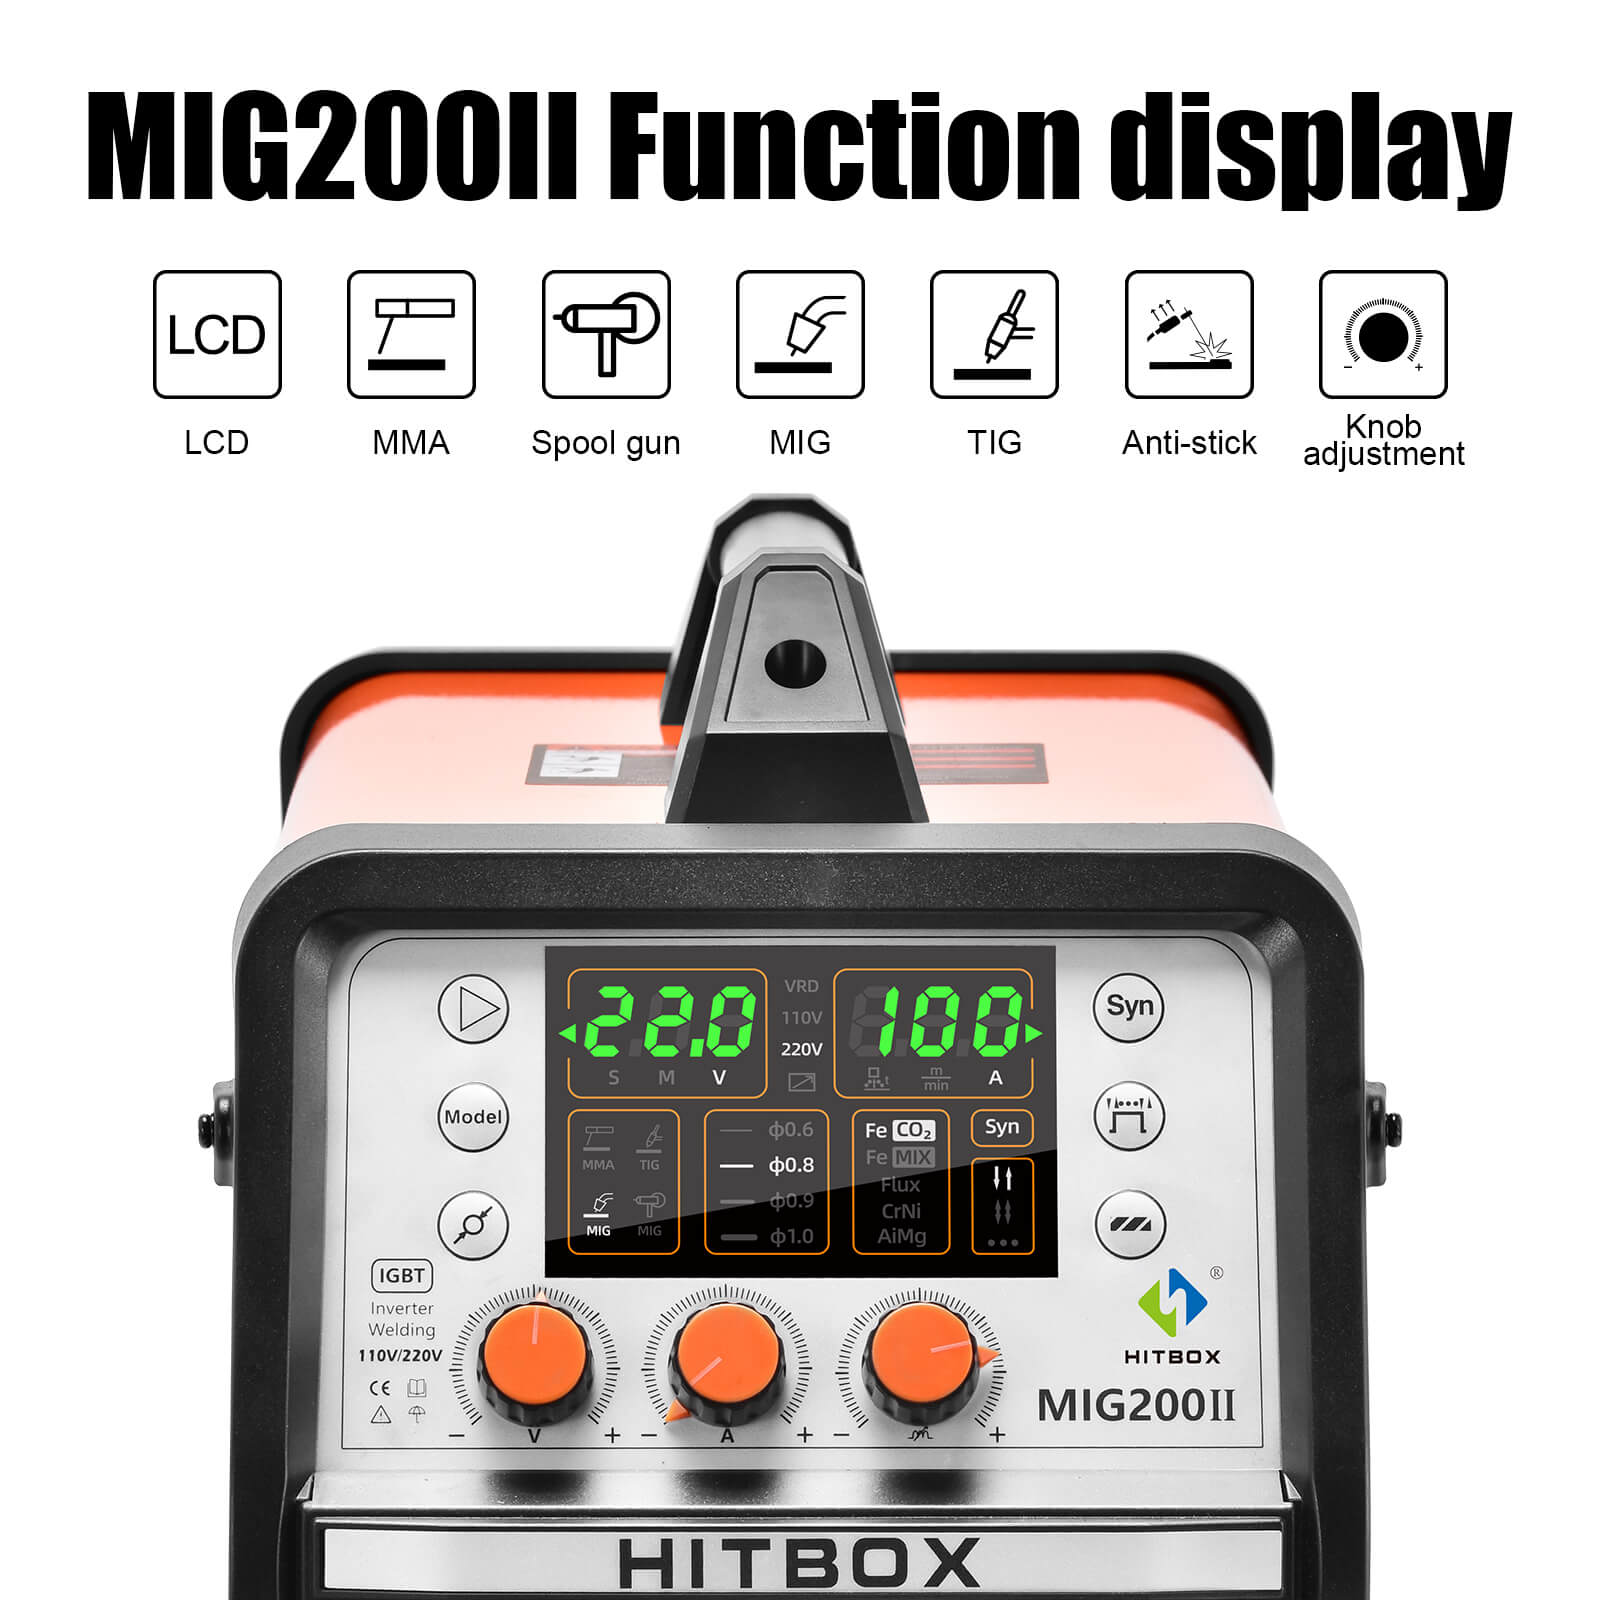 HITBOX Upgraded MIG200 II 4 in 1 MIG Welder